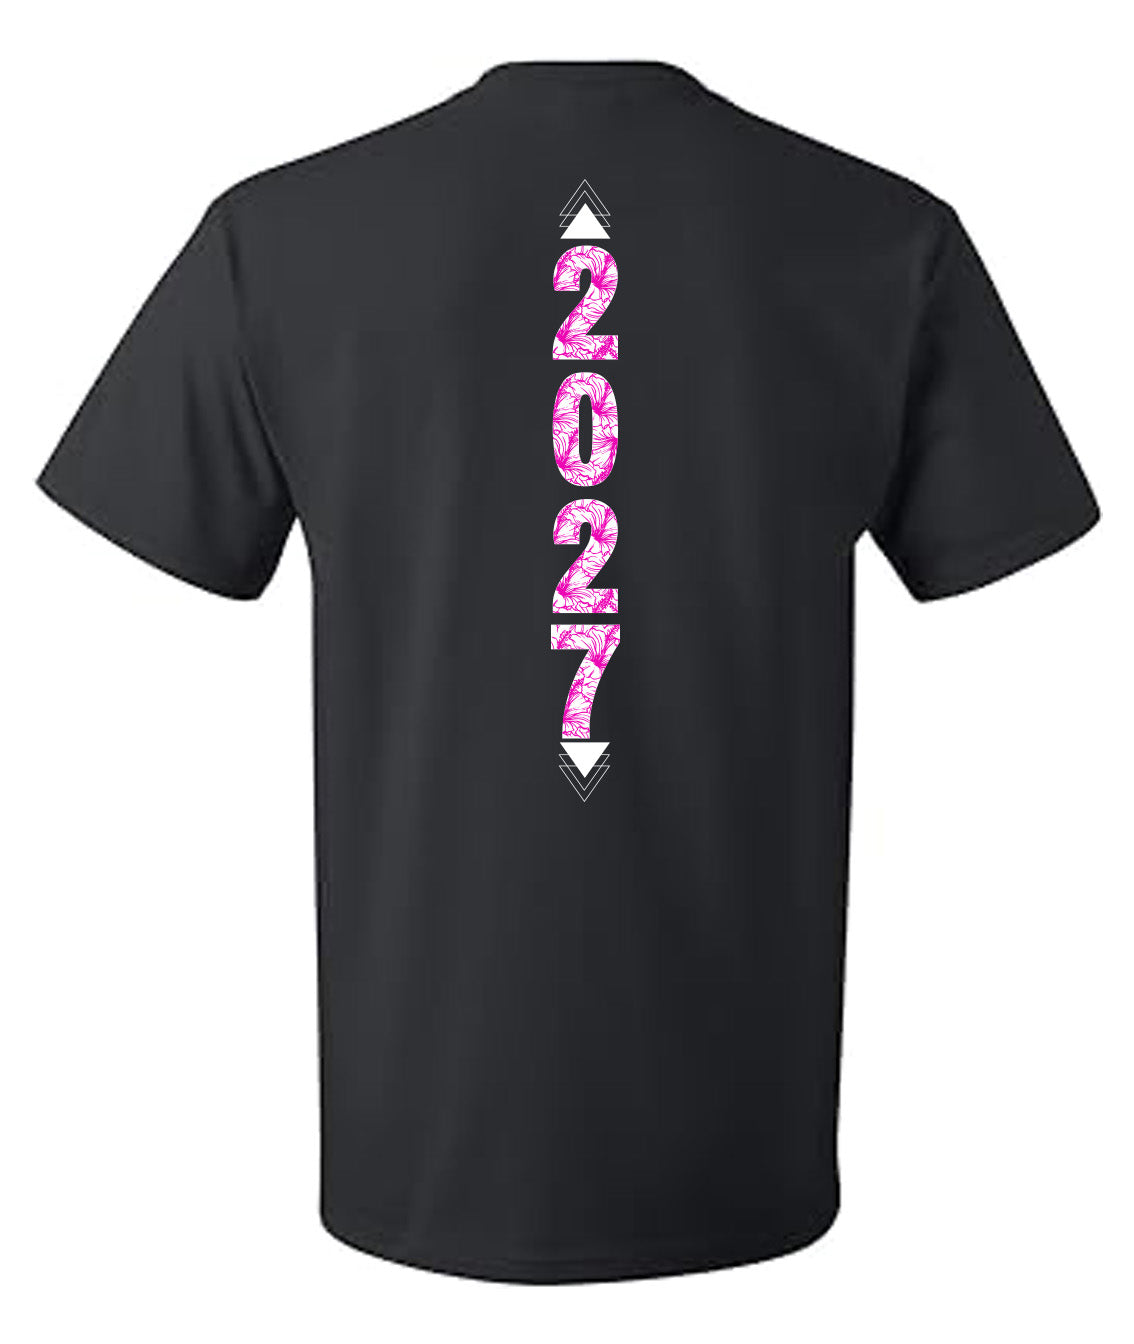 Class of 2027 T-Shirt